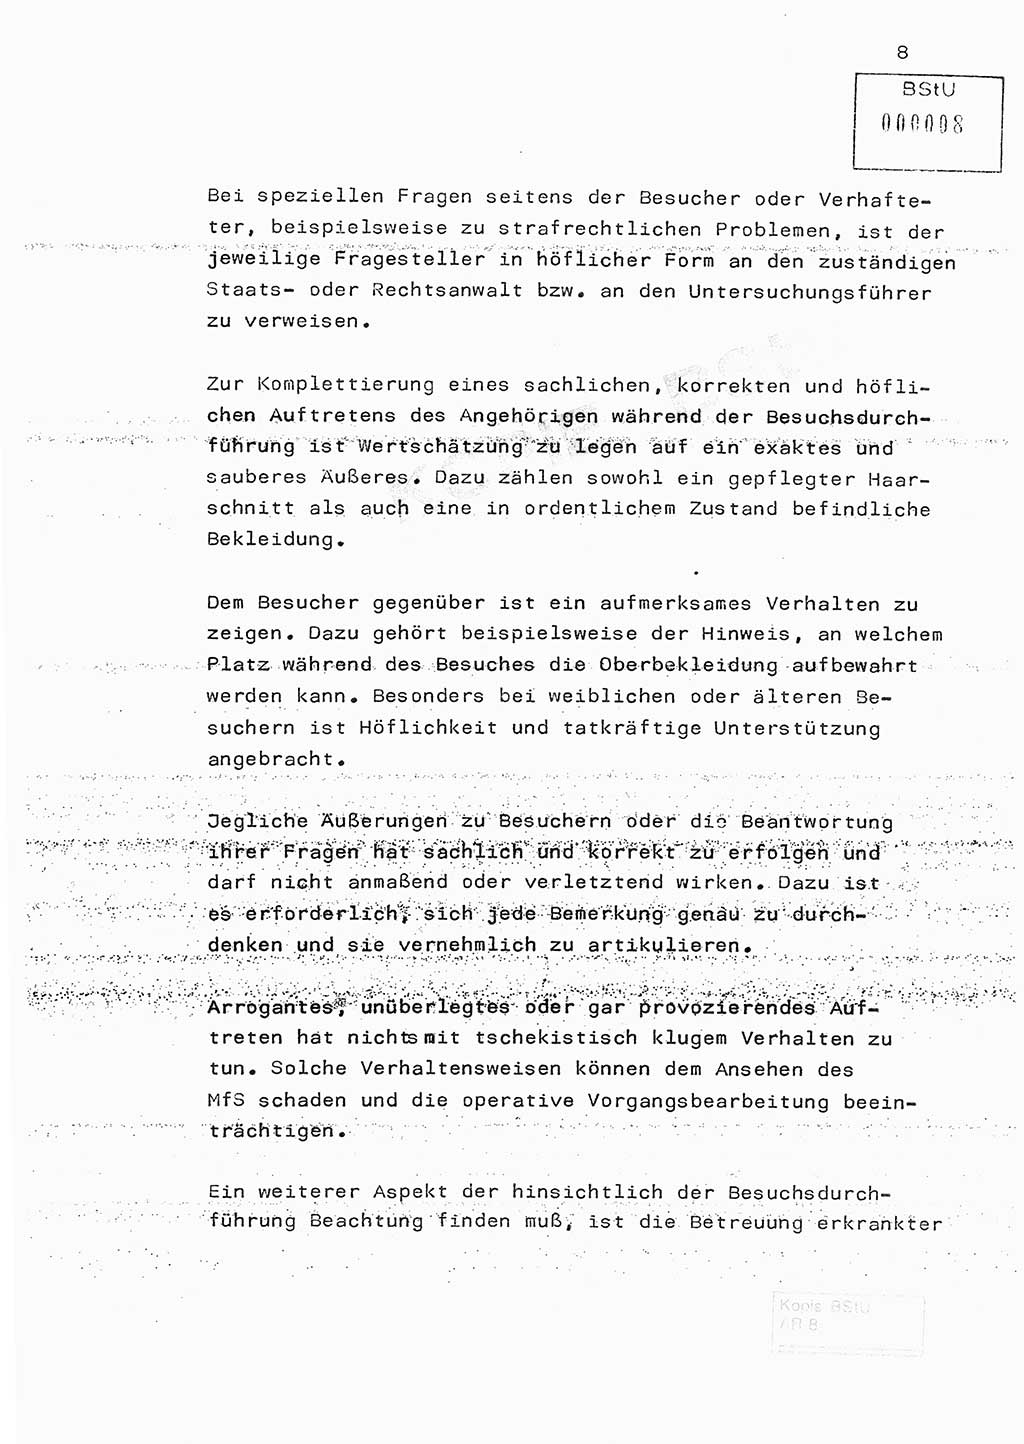 Fachschulabschlußarbeit Hauptmann Edwin Buhse (Abt. ⅩⅣ), Ministerium für Staatssicherheit (MfS) [Deutsche Demokratische Republik (DDR)], Abteilung ⅩⅣ, o.D., o.O, o.J., ca. 1986 wg. Bez. DA 2/86, Seite 8 (FS-Abschl.-Arb. MfS DDR Abt. ⅩⅣ 1986, S. 8)